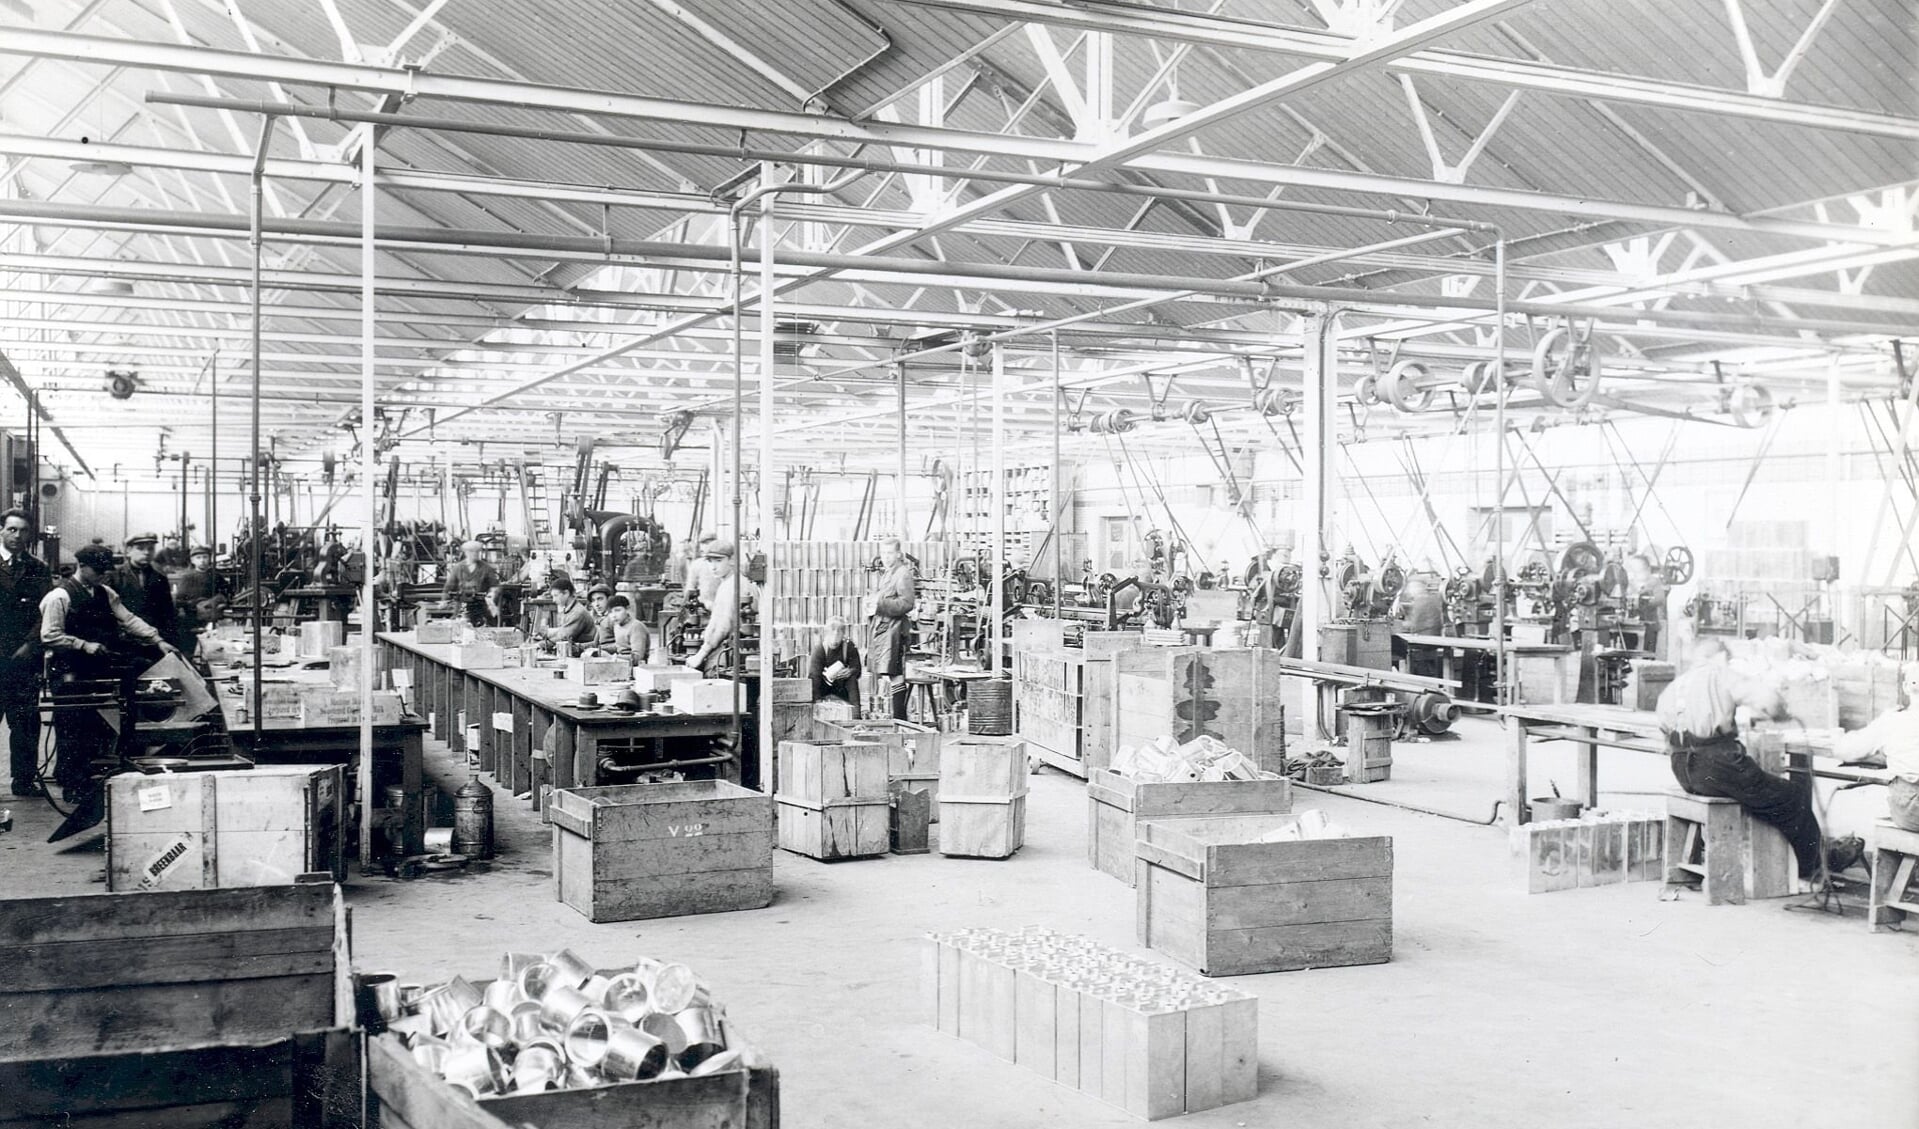 Arbeiders aan het werk in de nieuwe blikfabriek aan de Woudmansstraat, 1932 (collectie HCL)